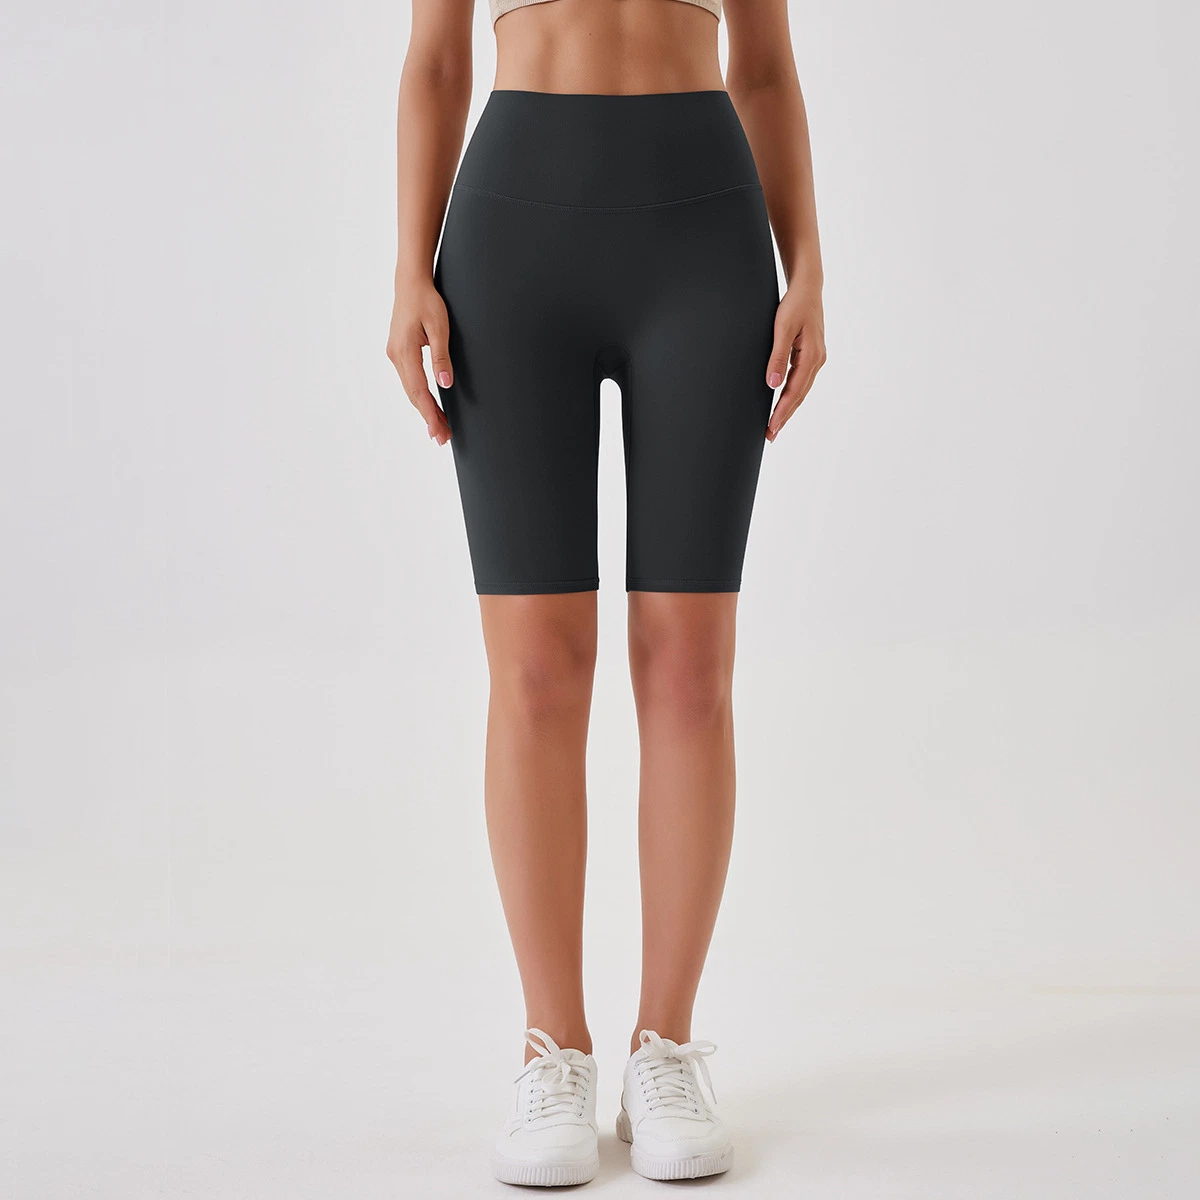 Bon vendre personnalisé respirant doux solide nylon sports fitness taille haute yoga shorts shorts d'entraînement femmes biker shorts leggings.